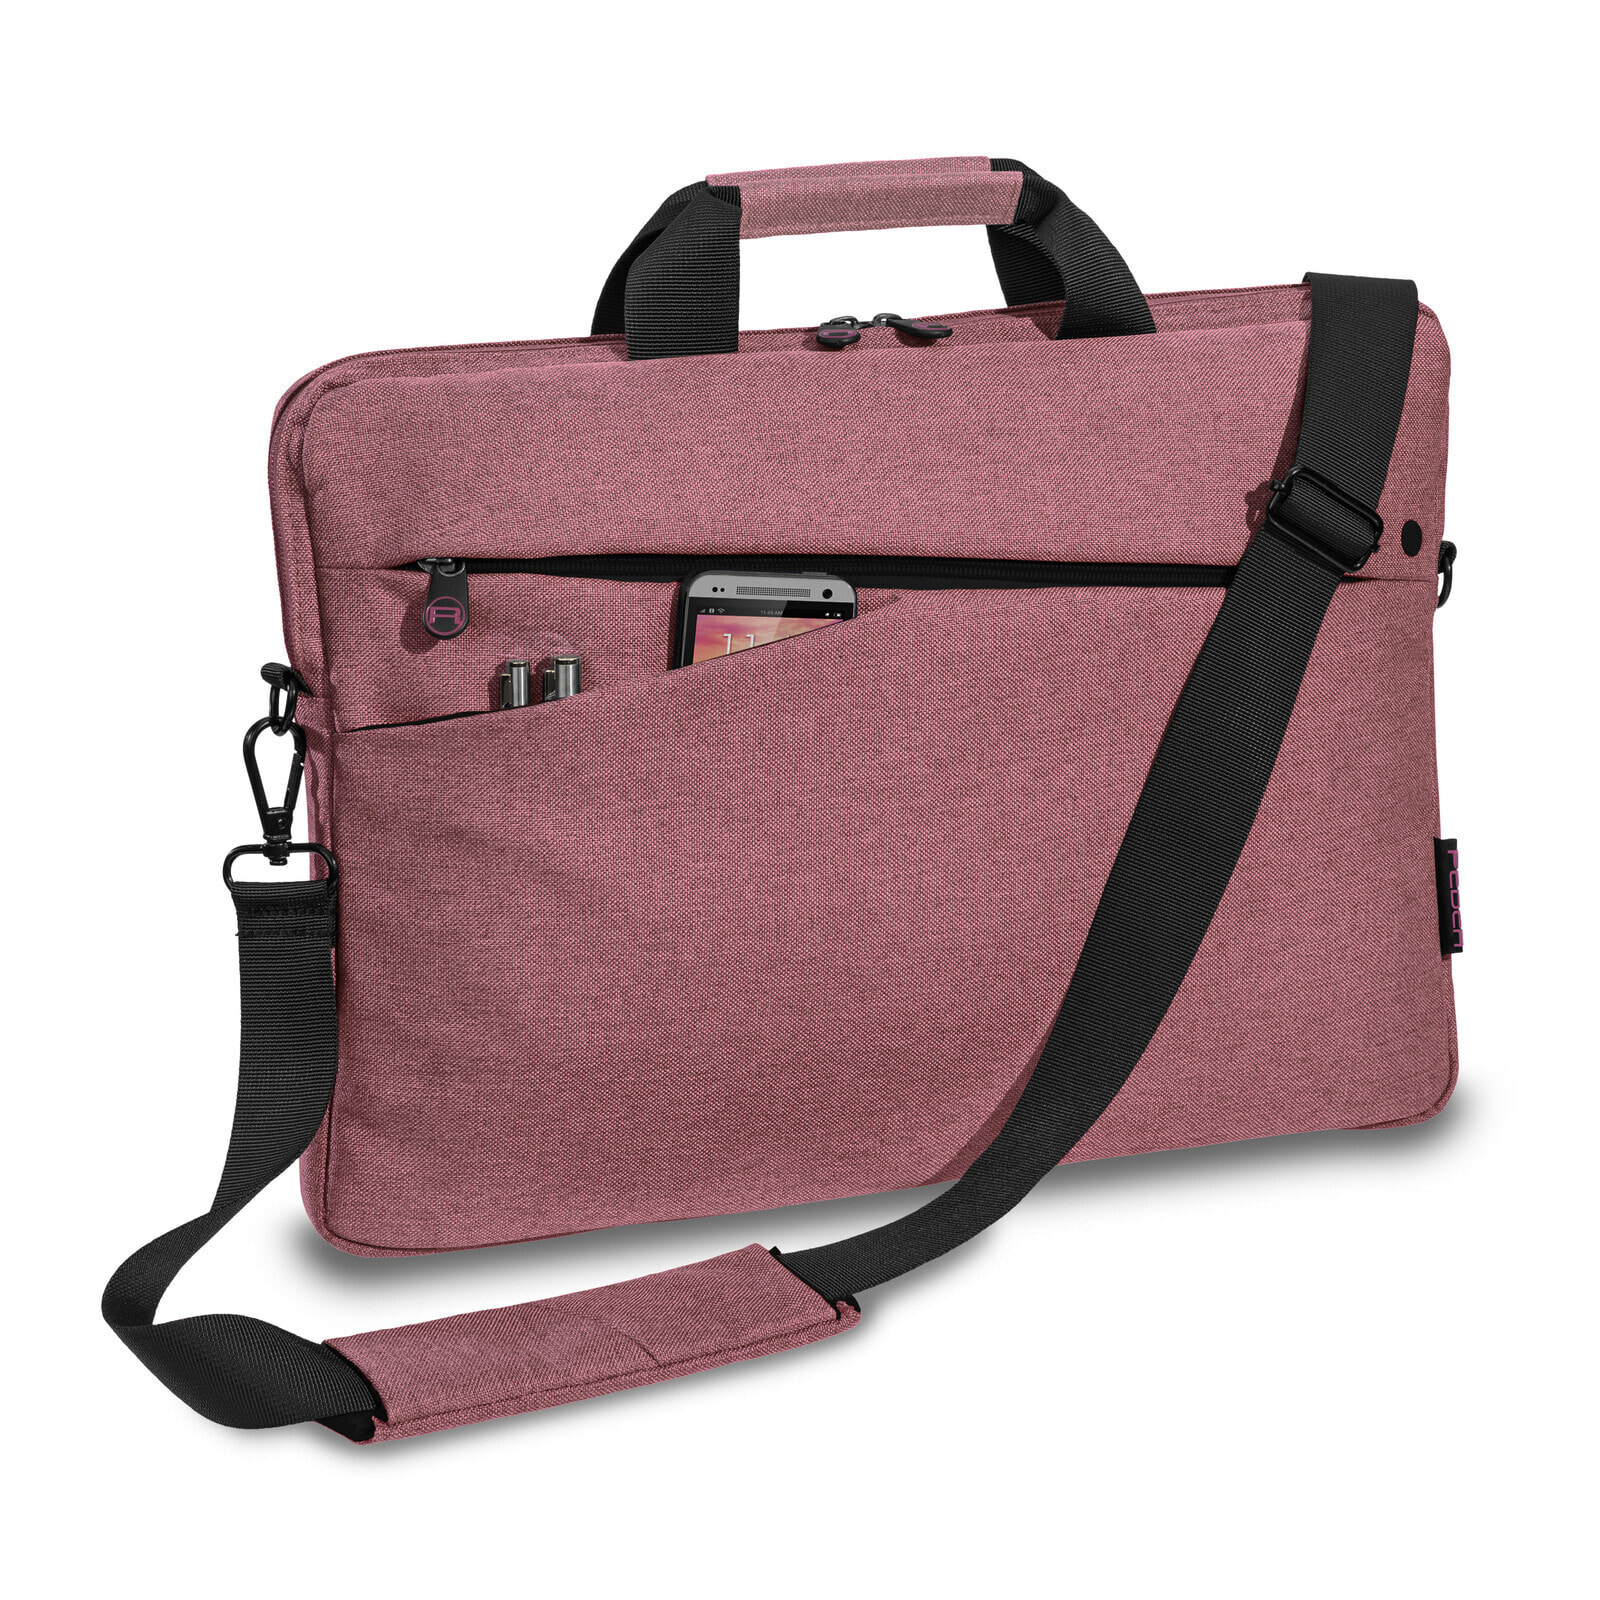 Laptoptasche 13.3 Zoll 33.8cm FASHION Notebook Umhängetasche mit - Shoulder Bag